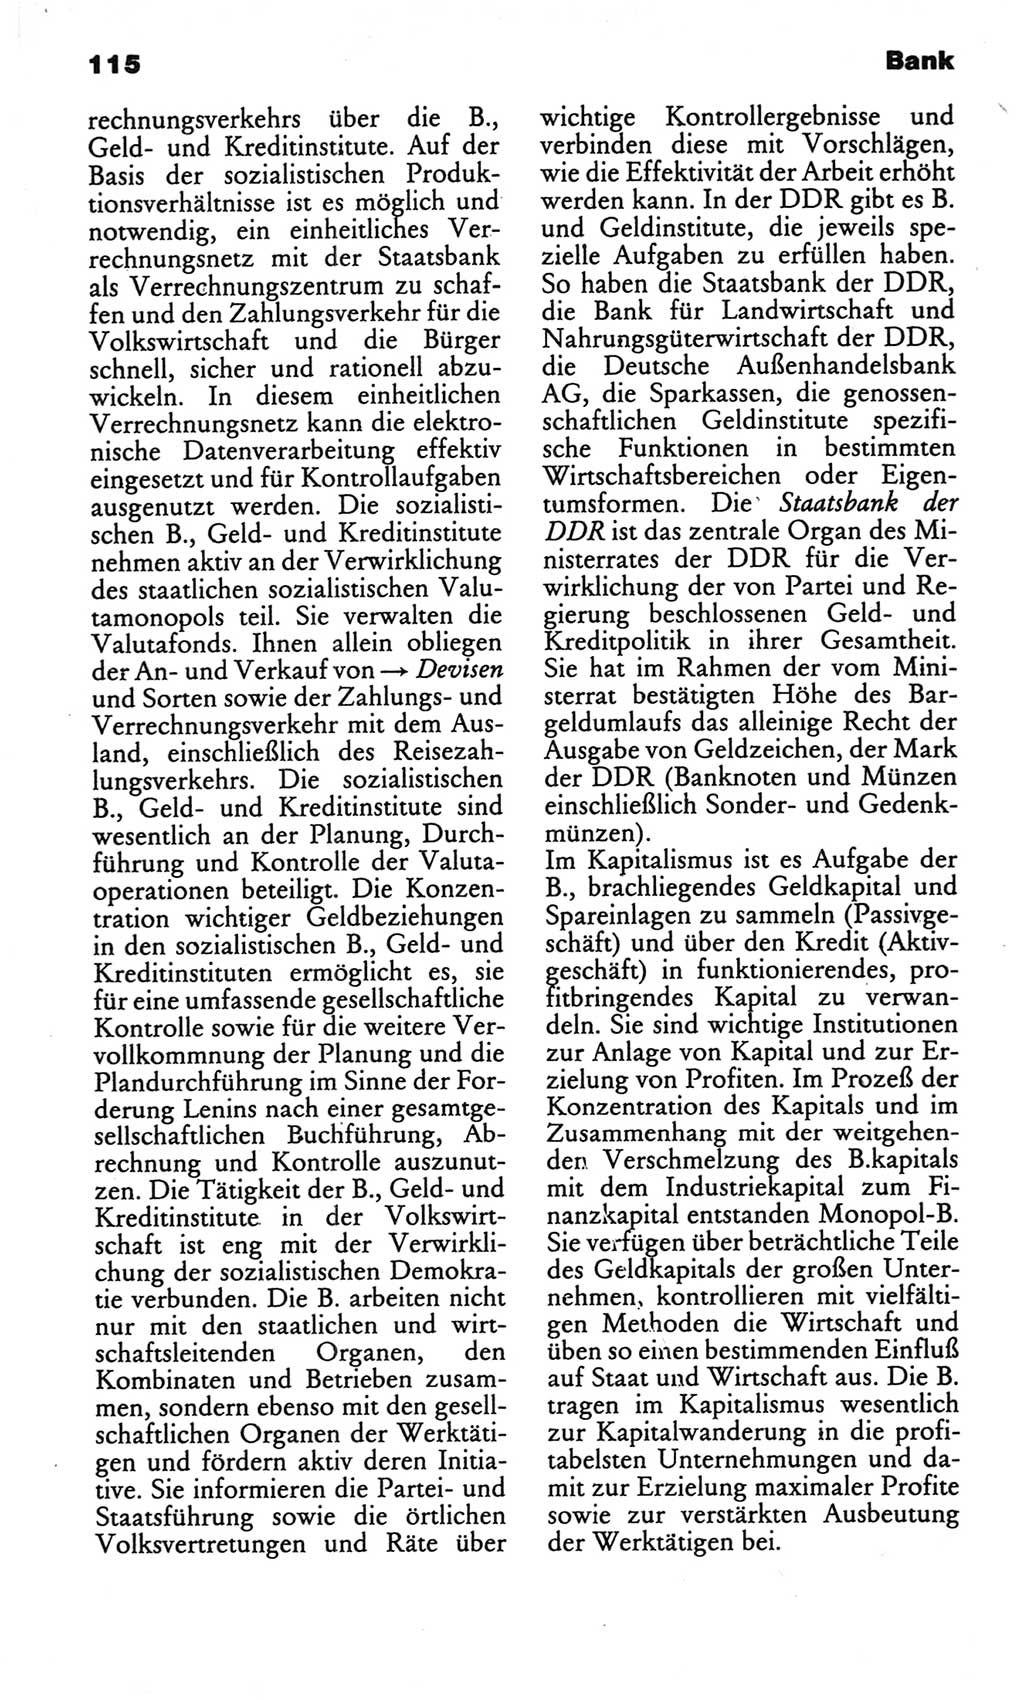 Kleines politisches Wörterbuch [Deutsche Demokratische Republik (DDR)] 1986, Seite 115 (Kl. pol. Wb. DDR 1986, S. 115)